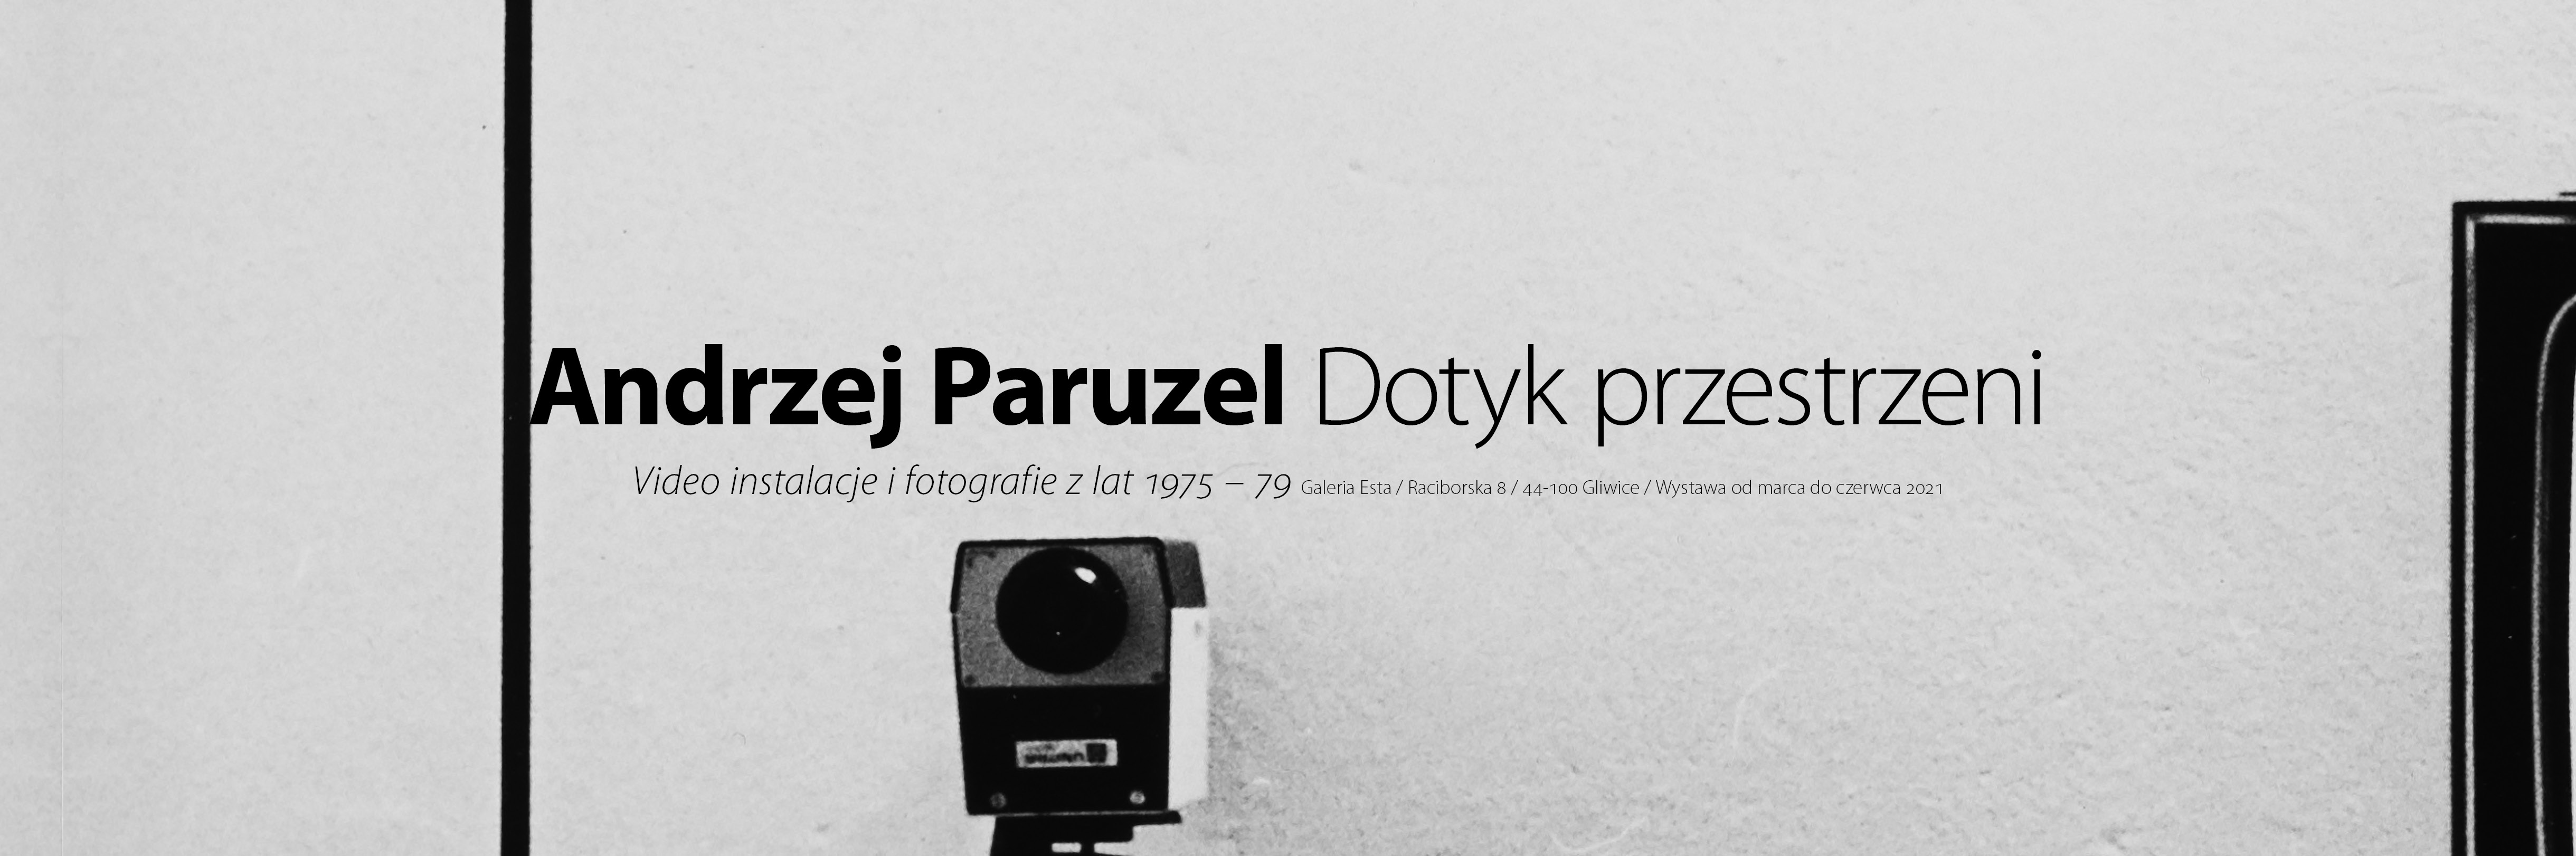 Andrzej Paruzel - dotyk przestrzeni